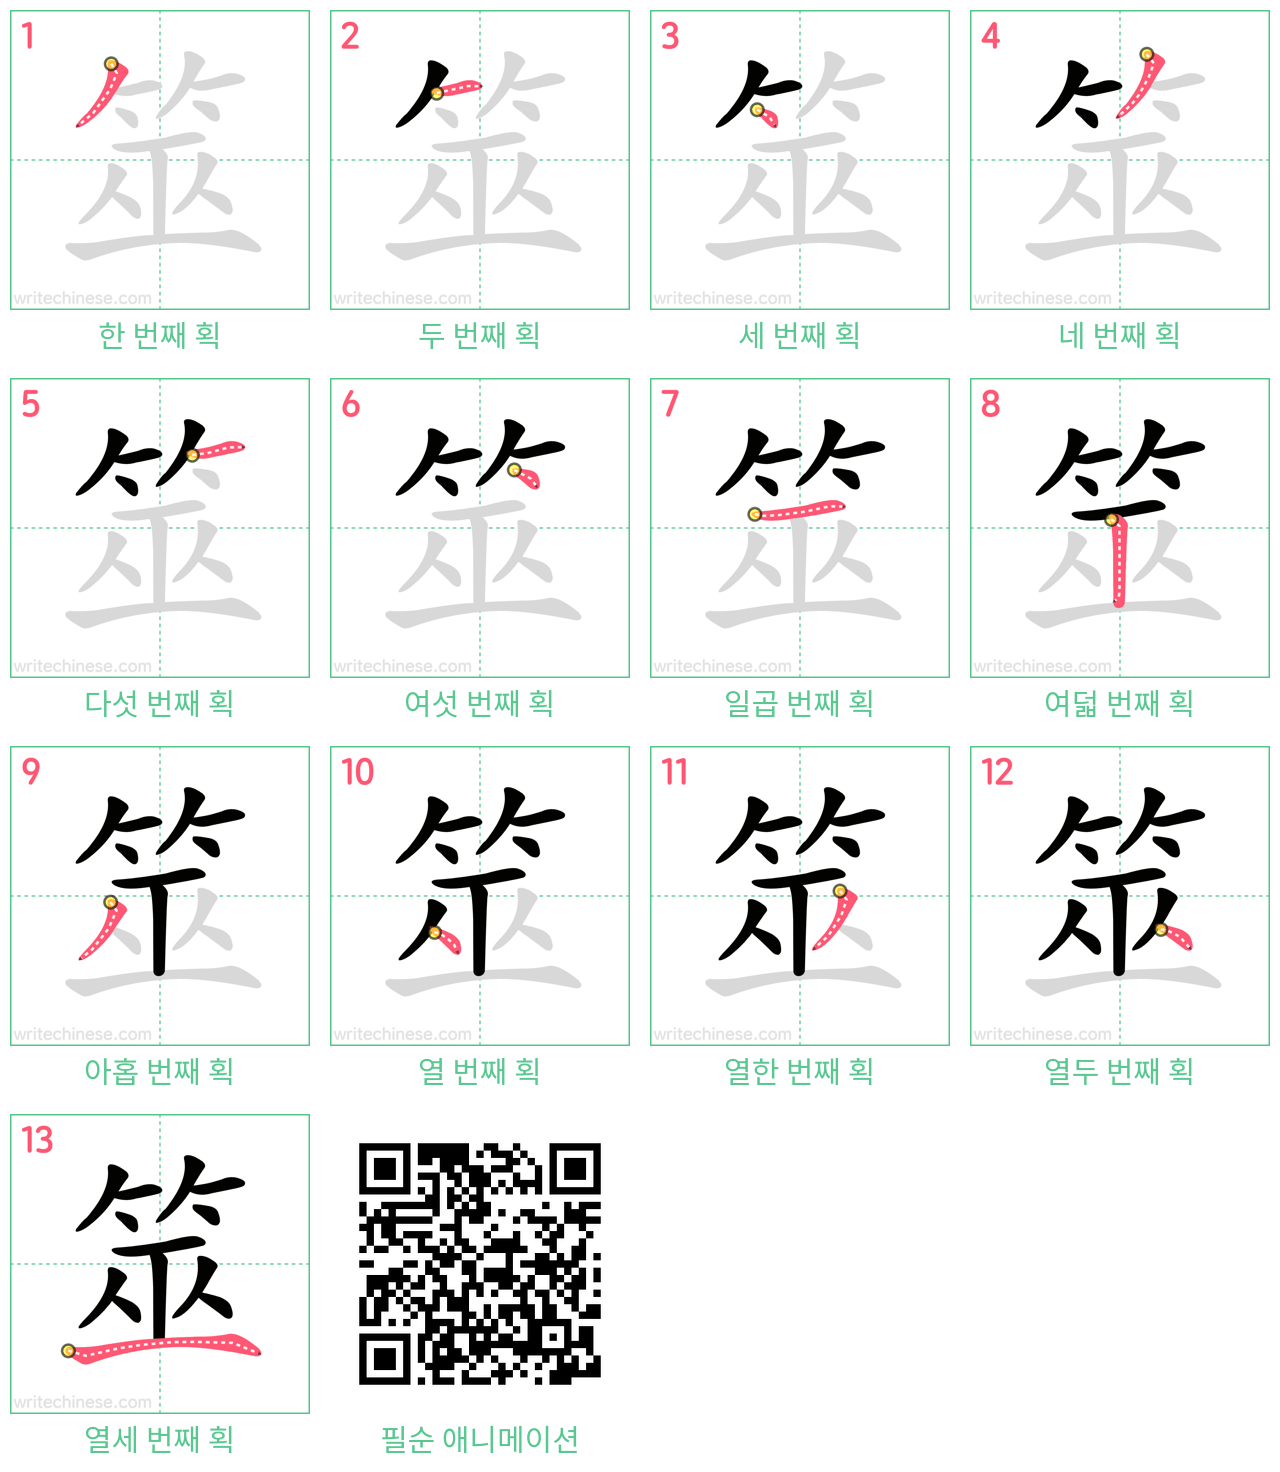 筮 step-by-step stroke order diagrams